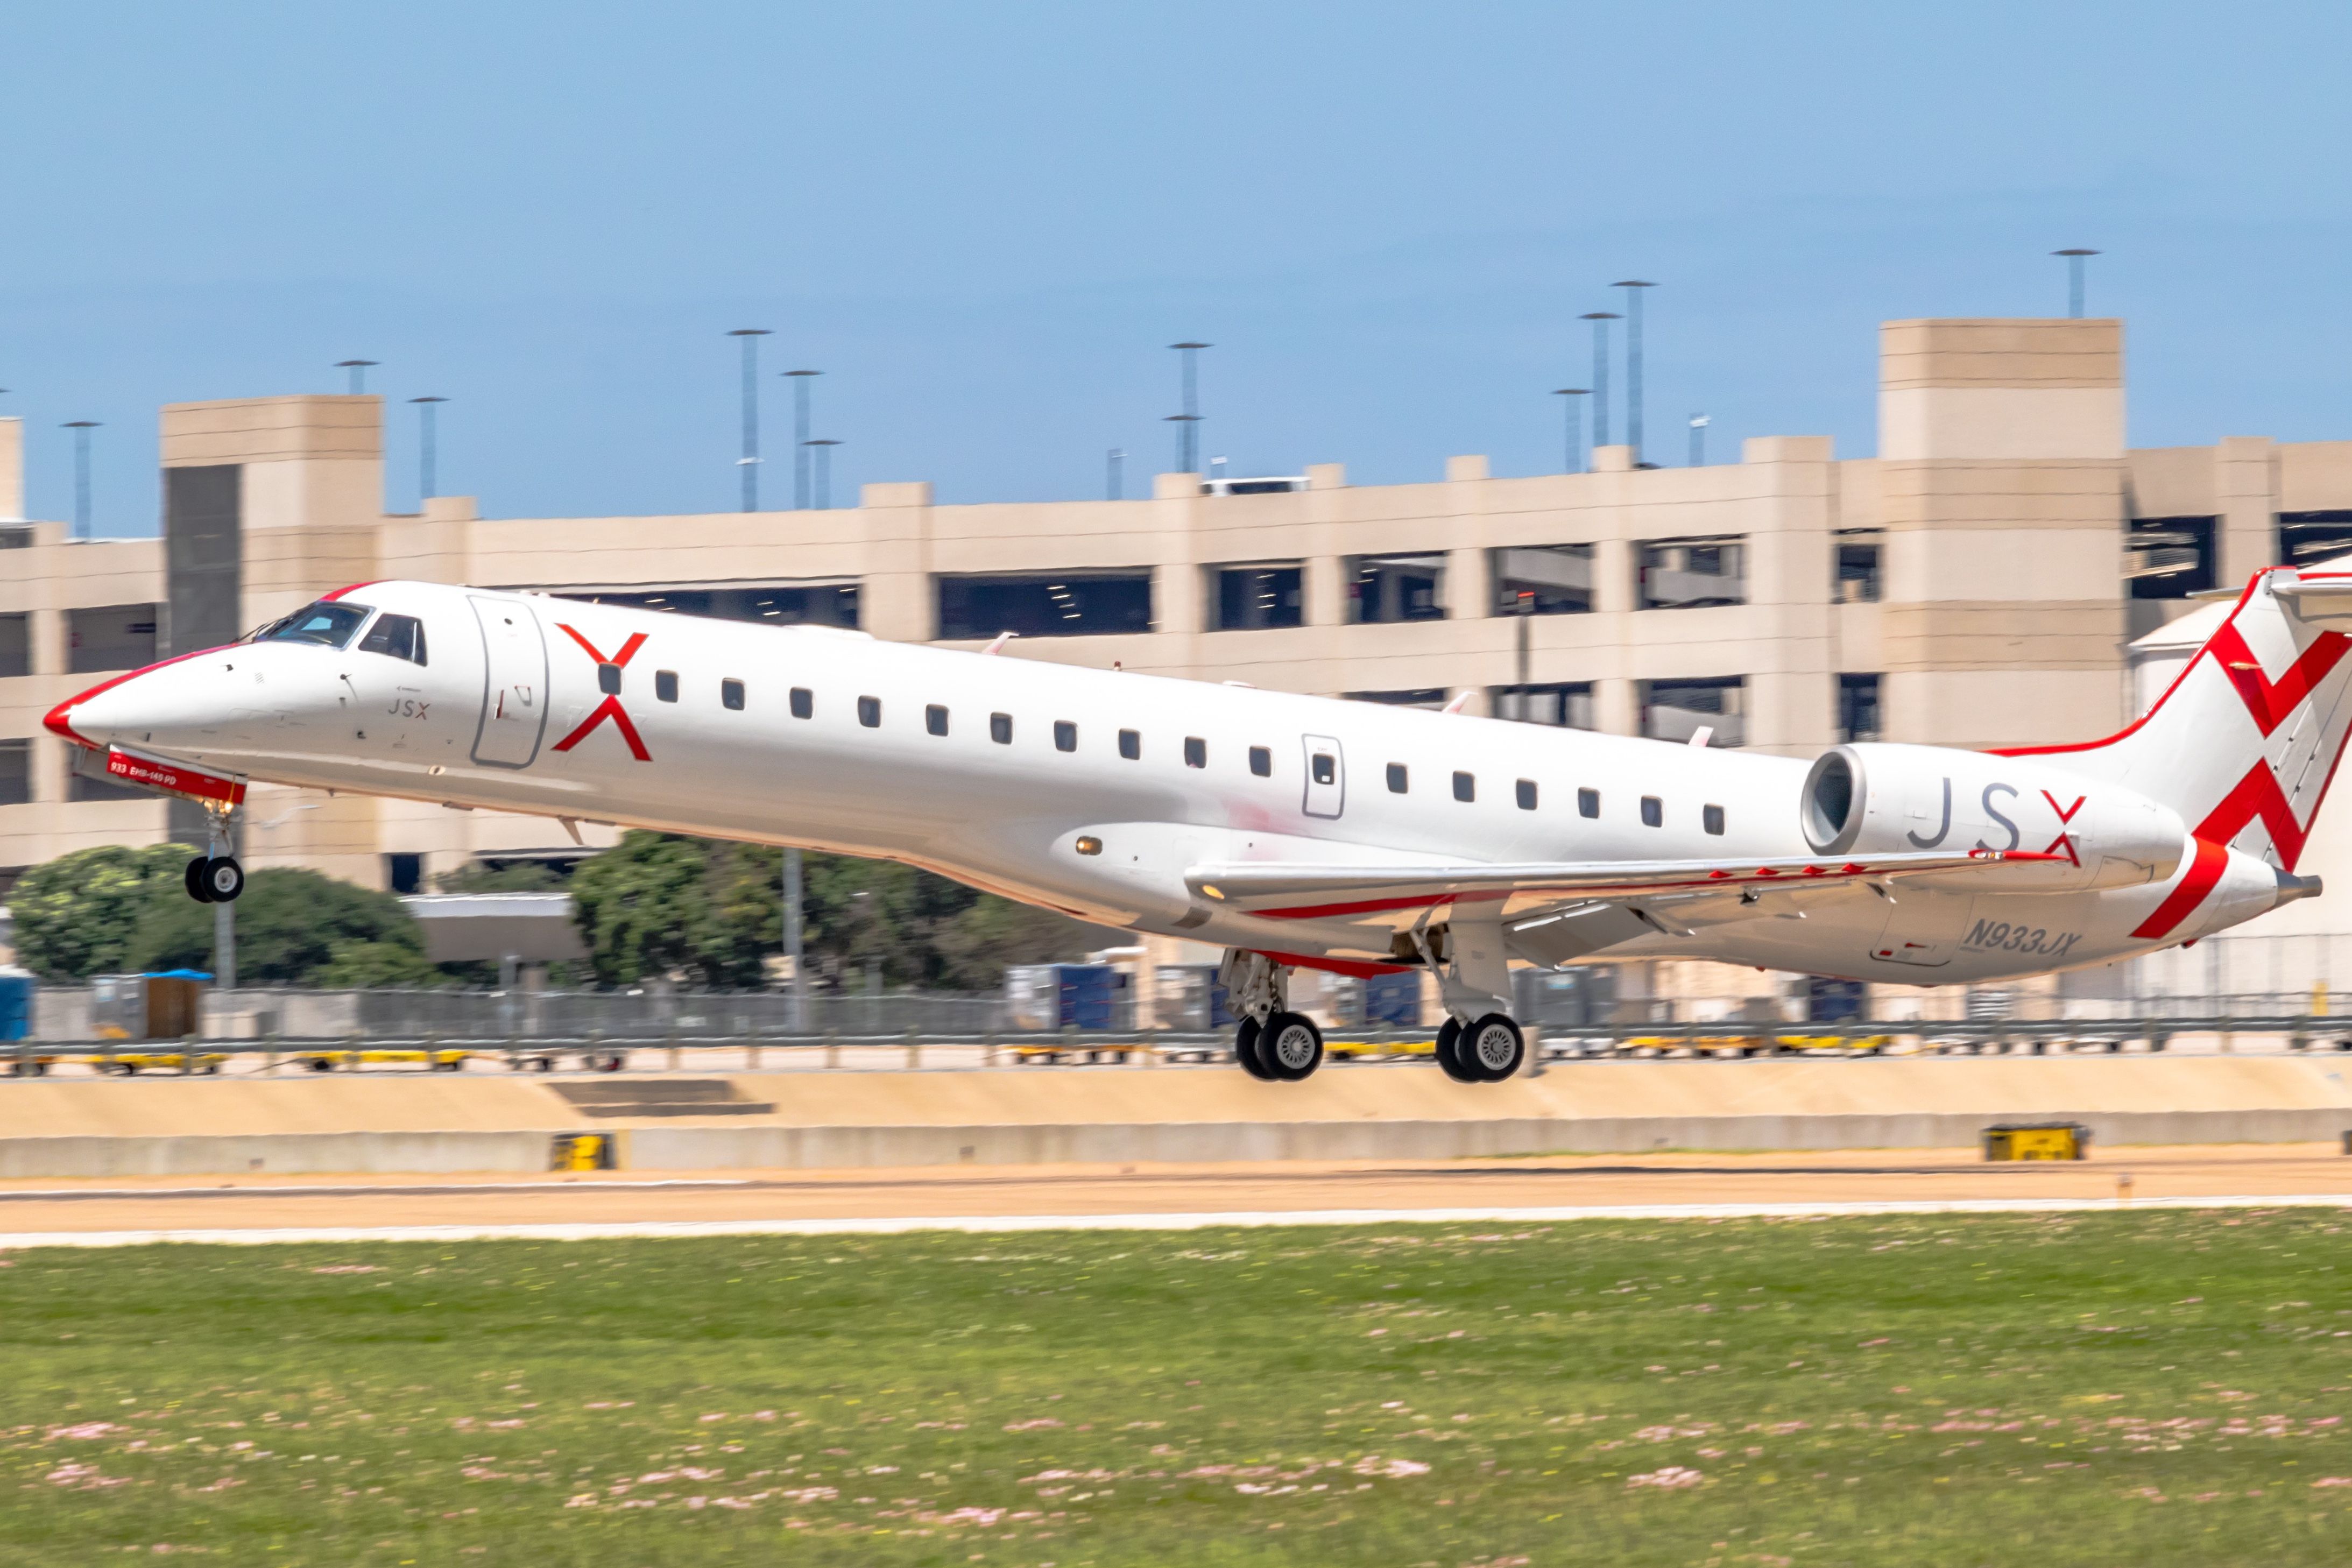 A JSX aircraft just above a runway.